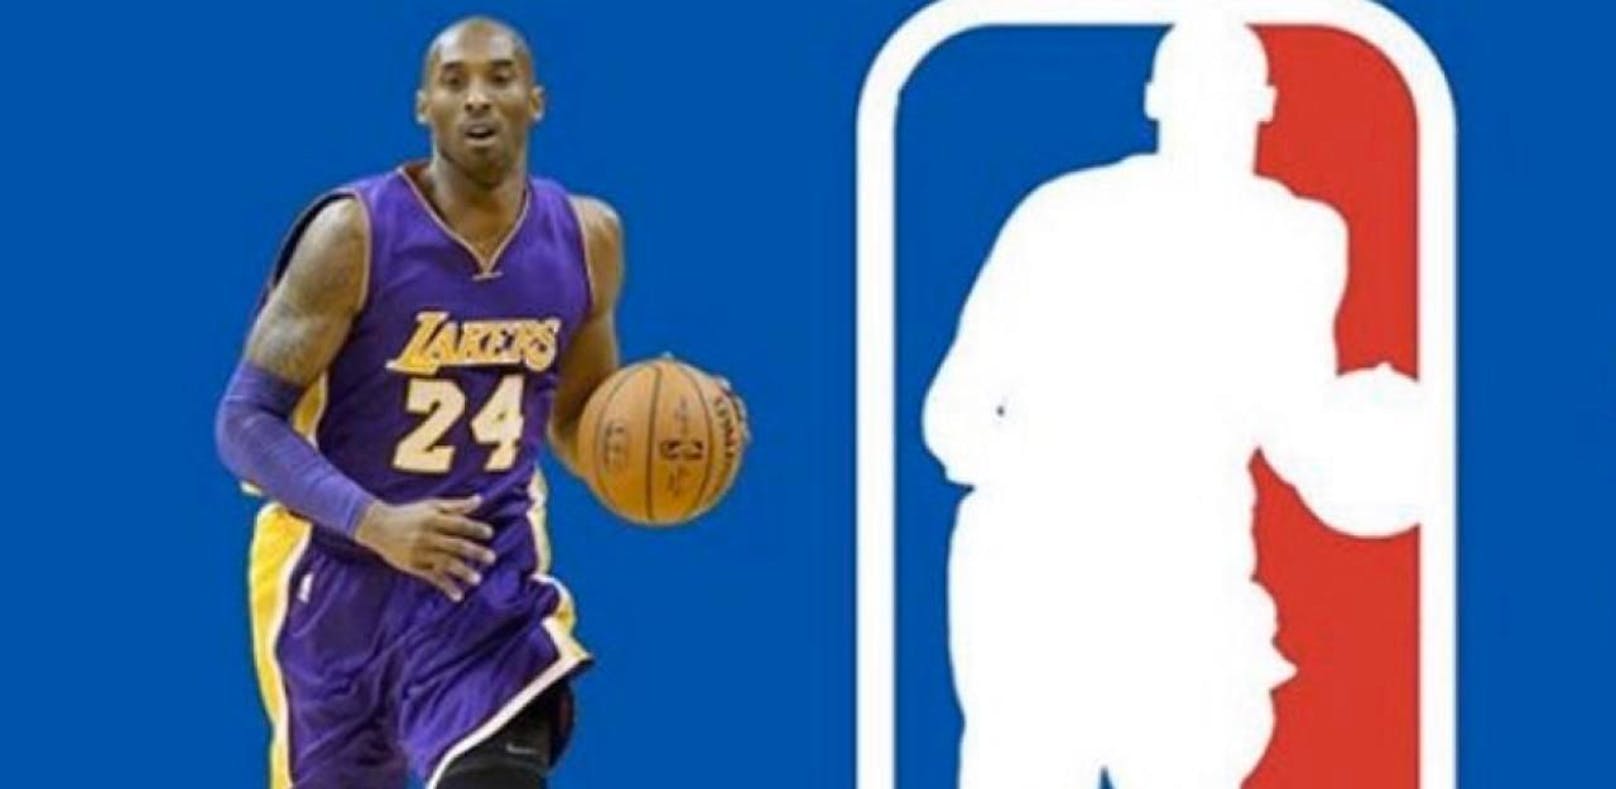 Nach Unfalltod: Kommt Bryant auf das NBA-Logo?